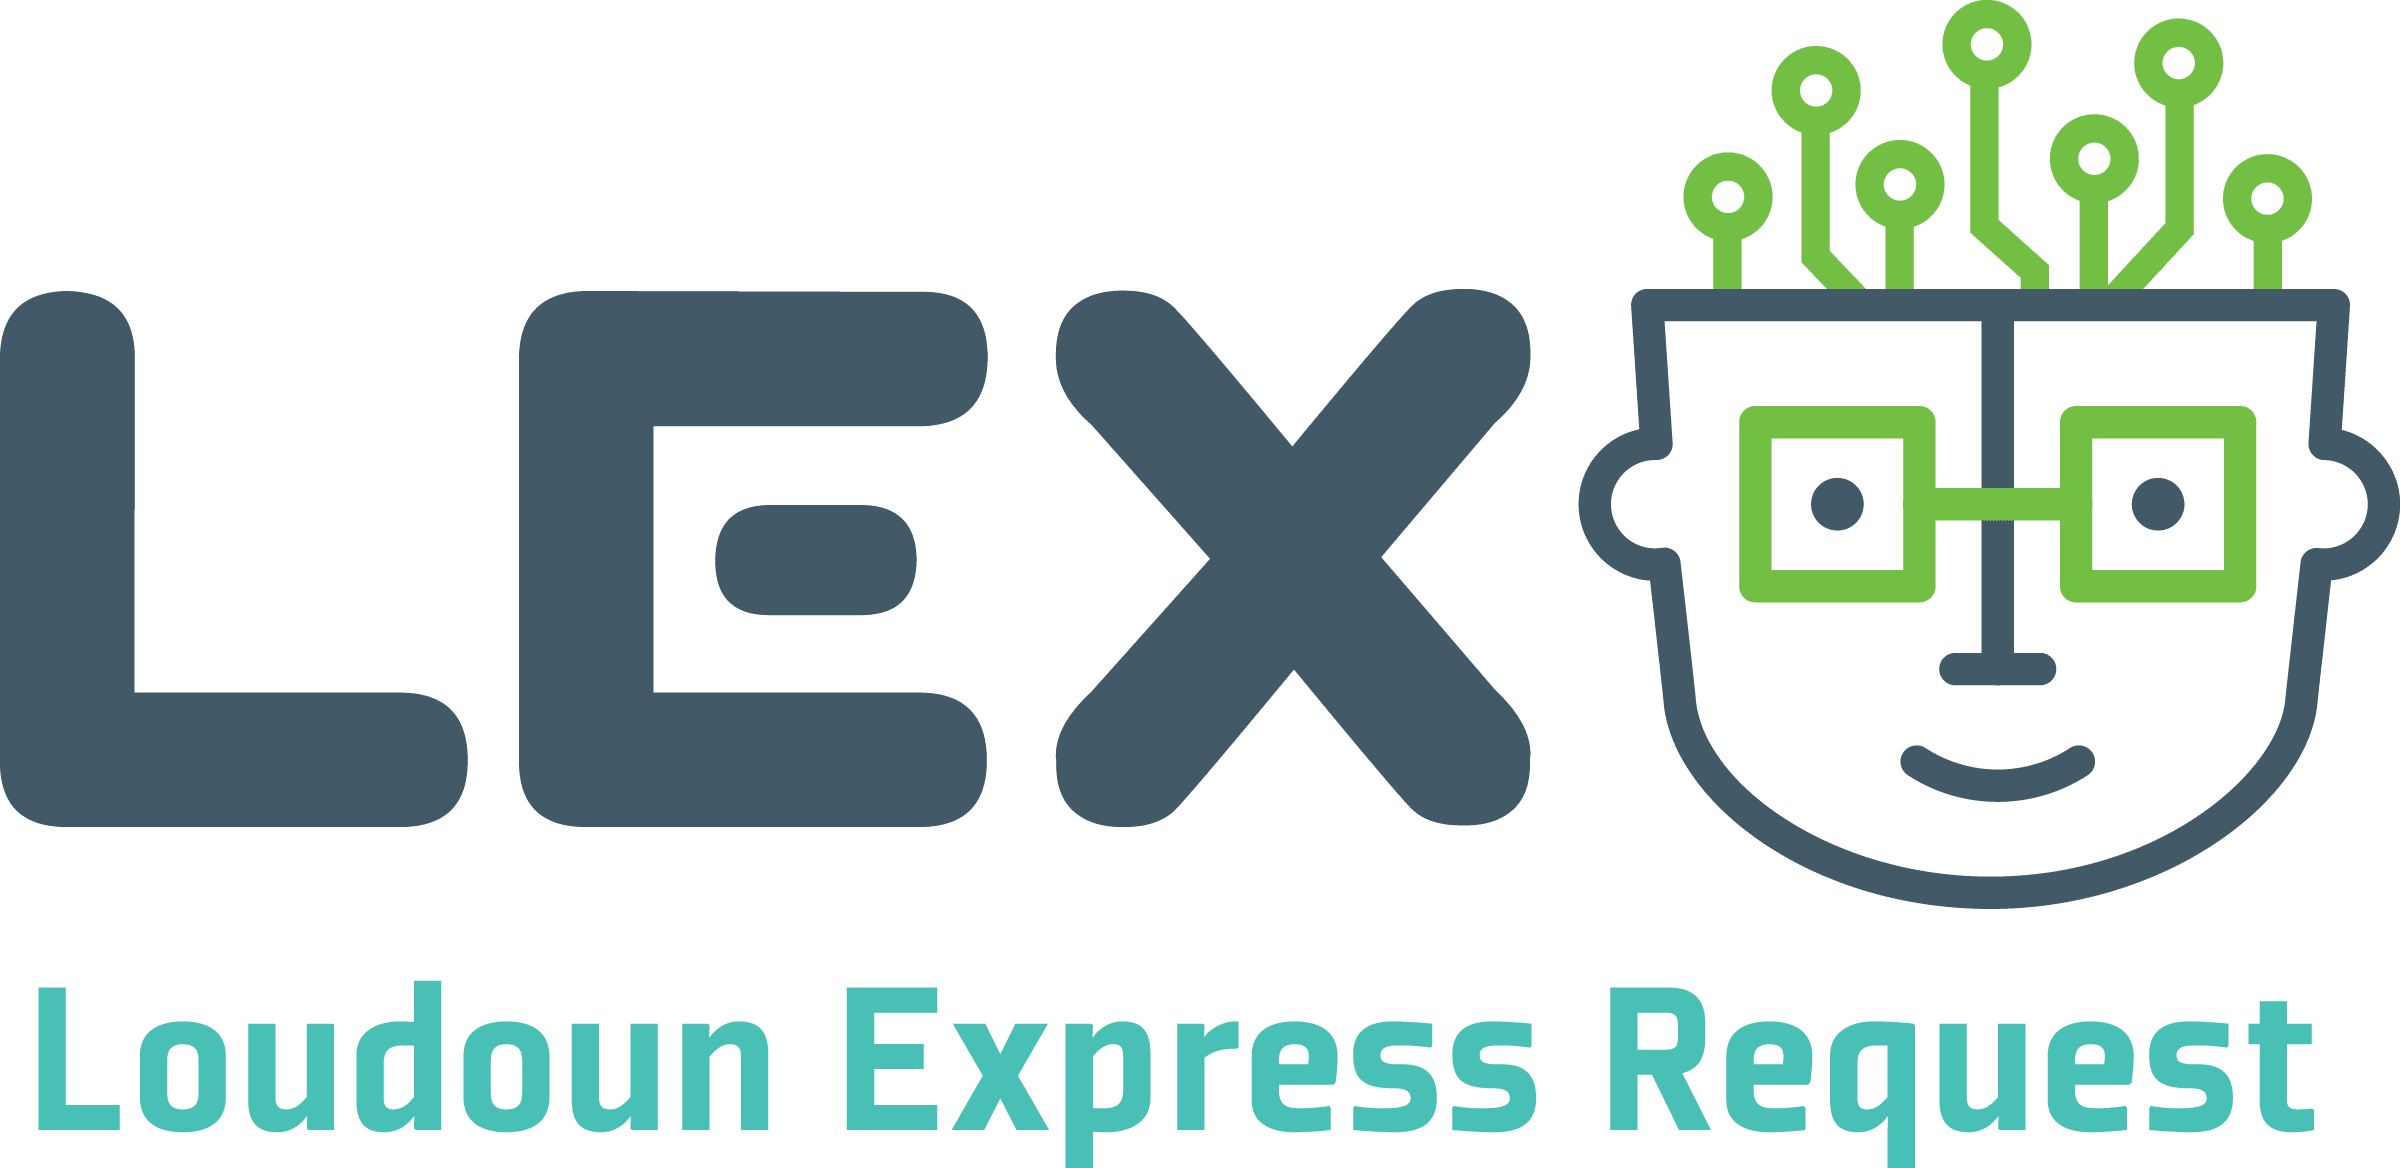 Loudoun Express Request